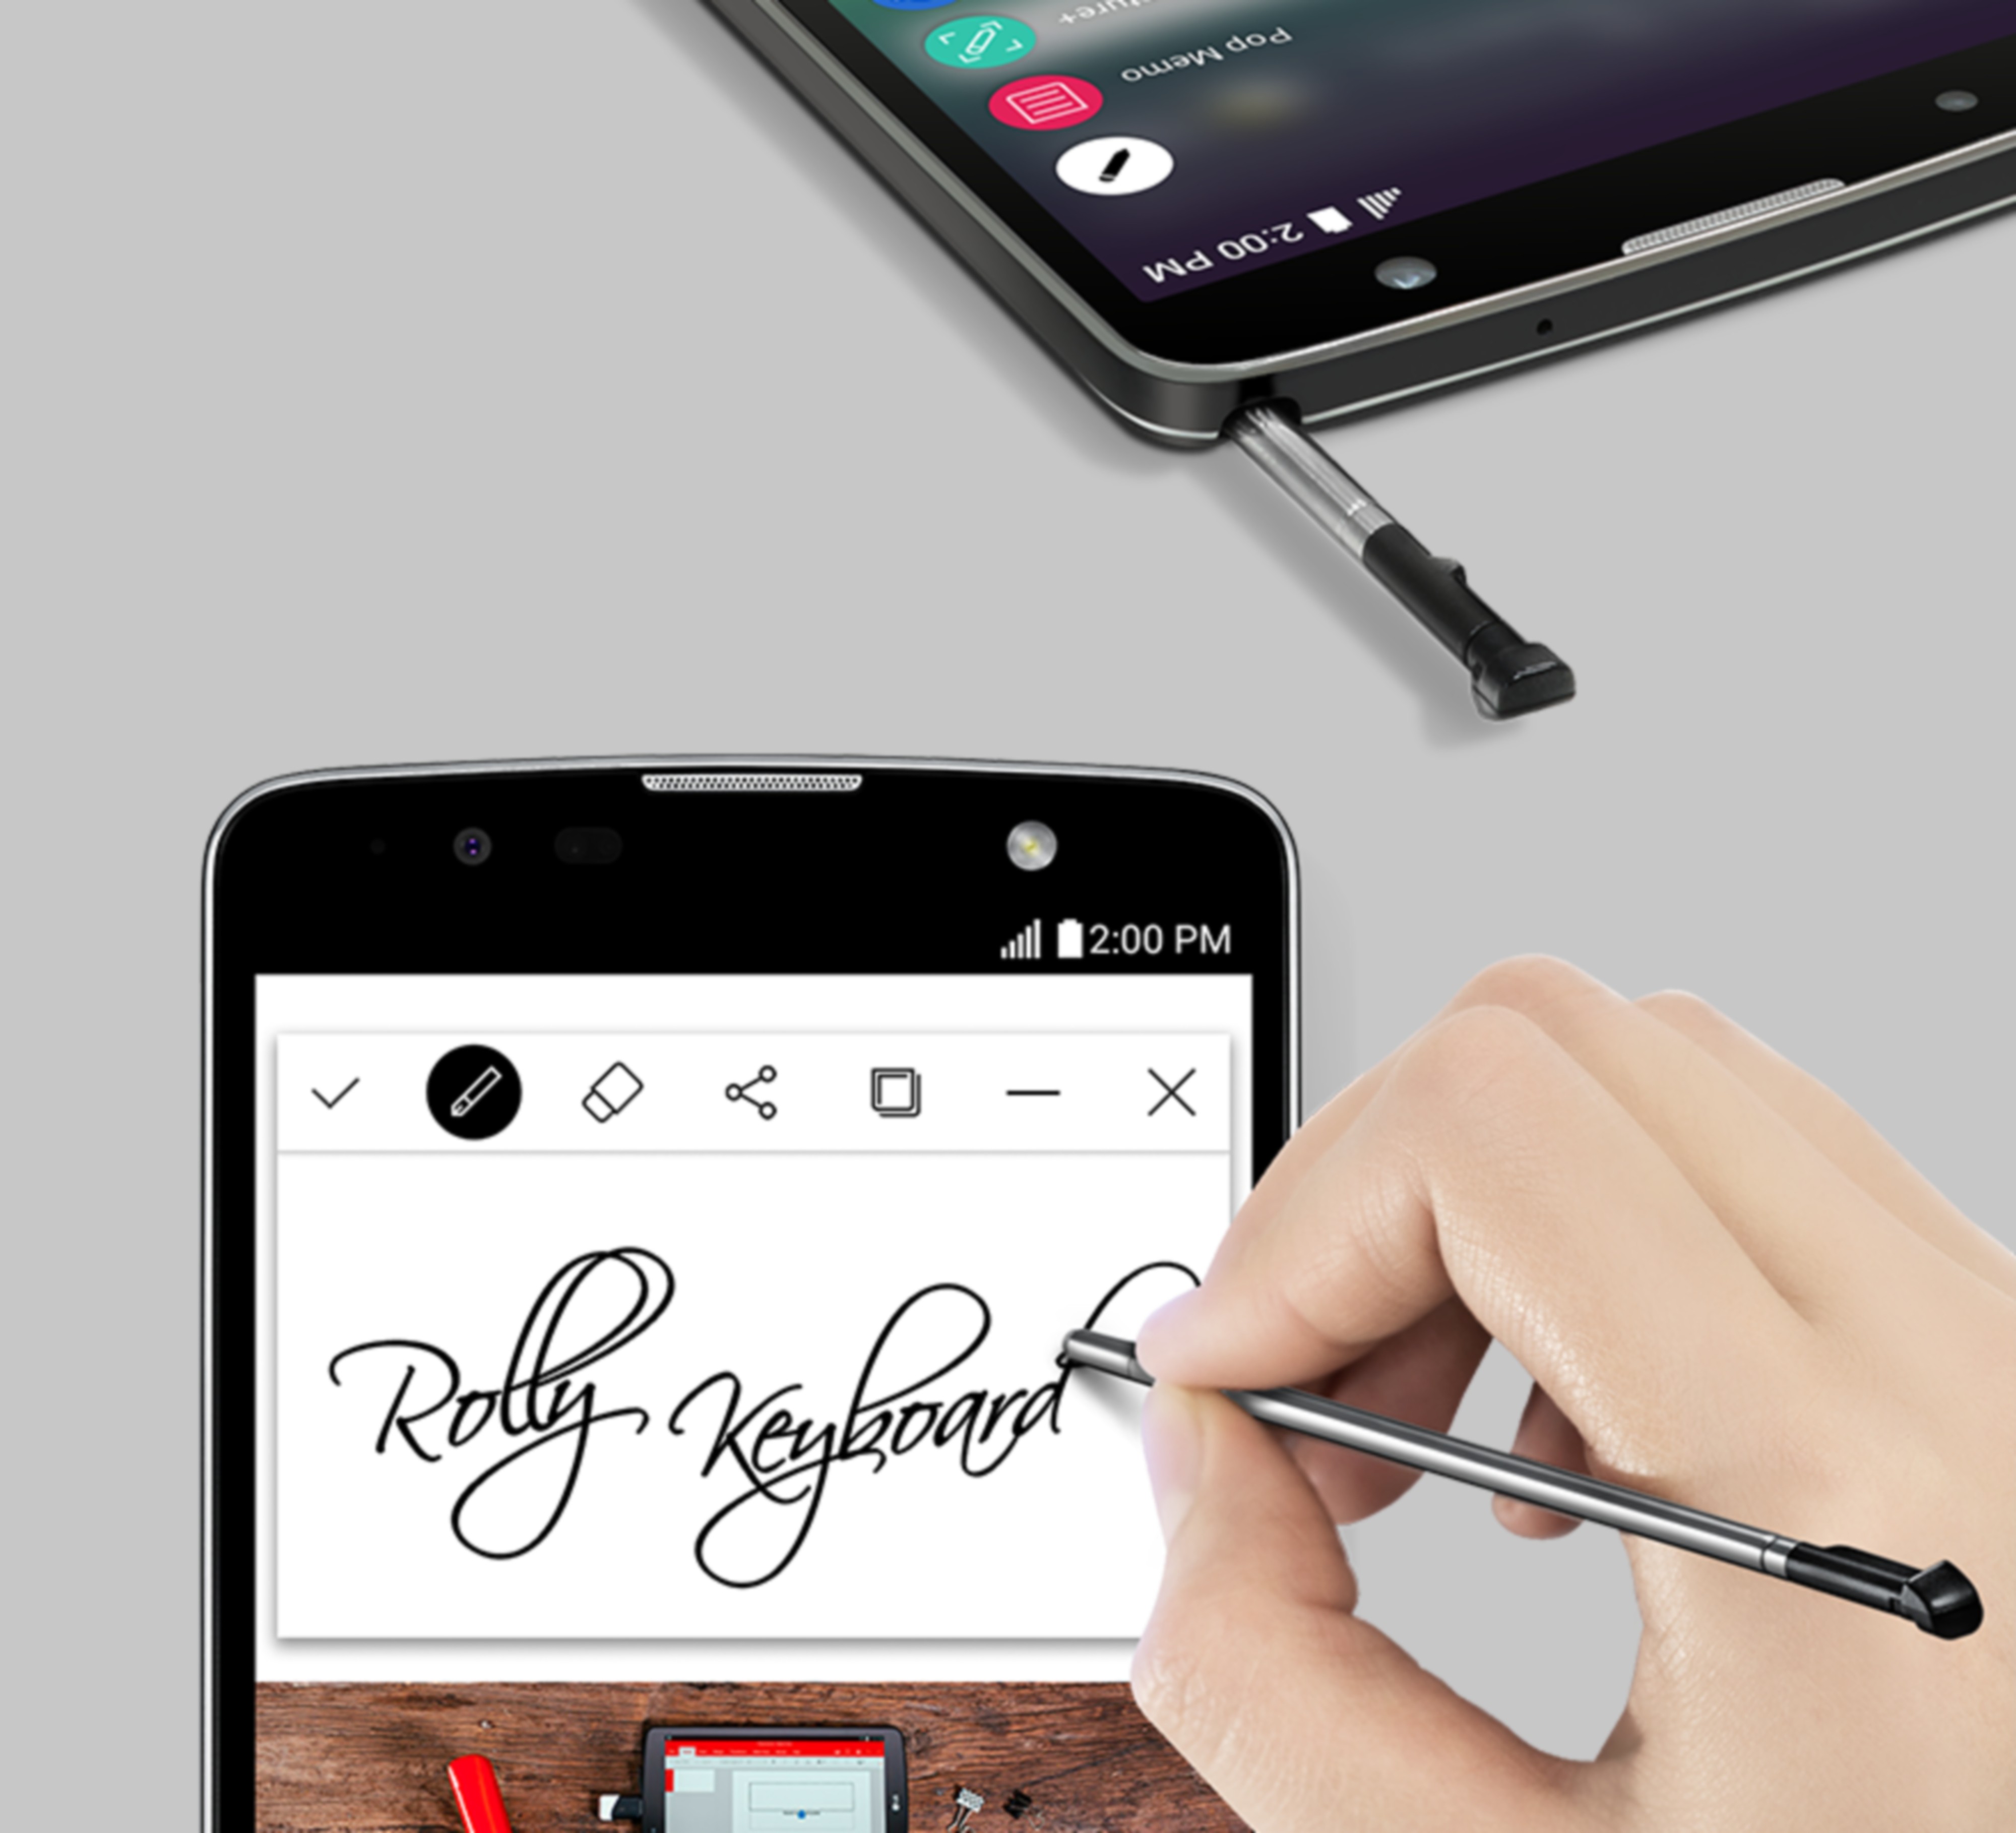 LG Stylus 2 Plus With Nano Coated Pen